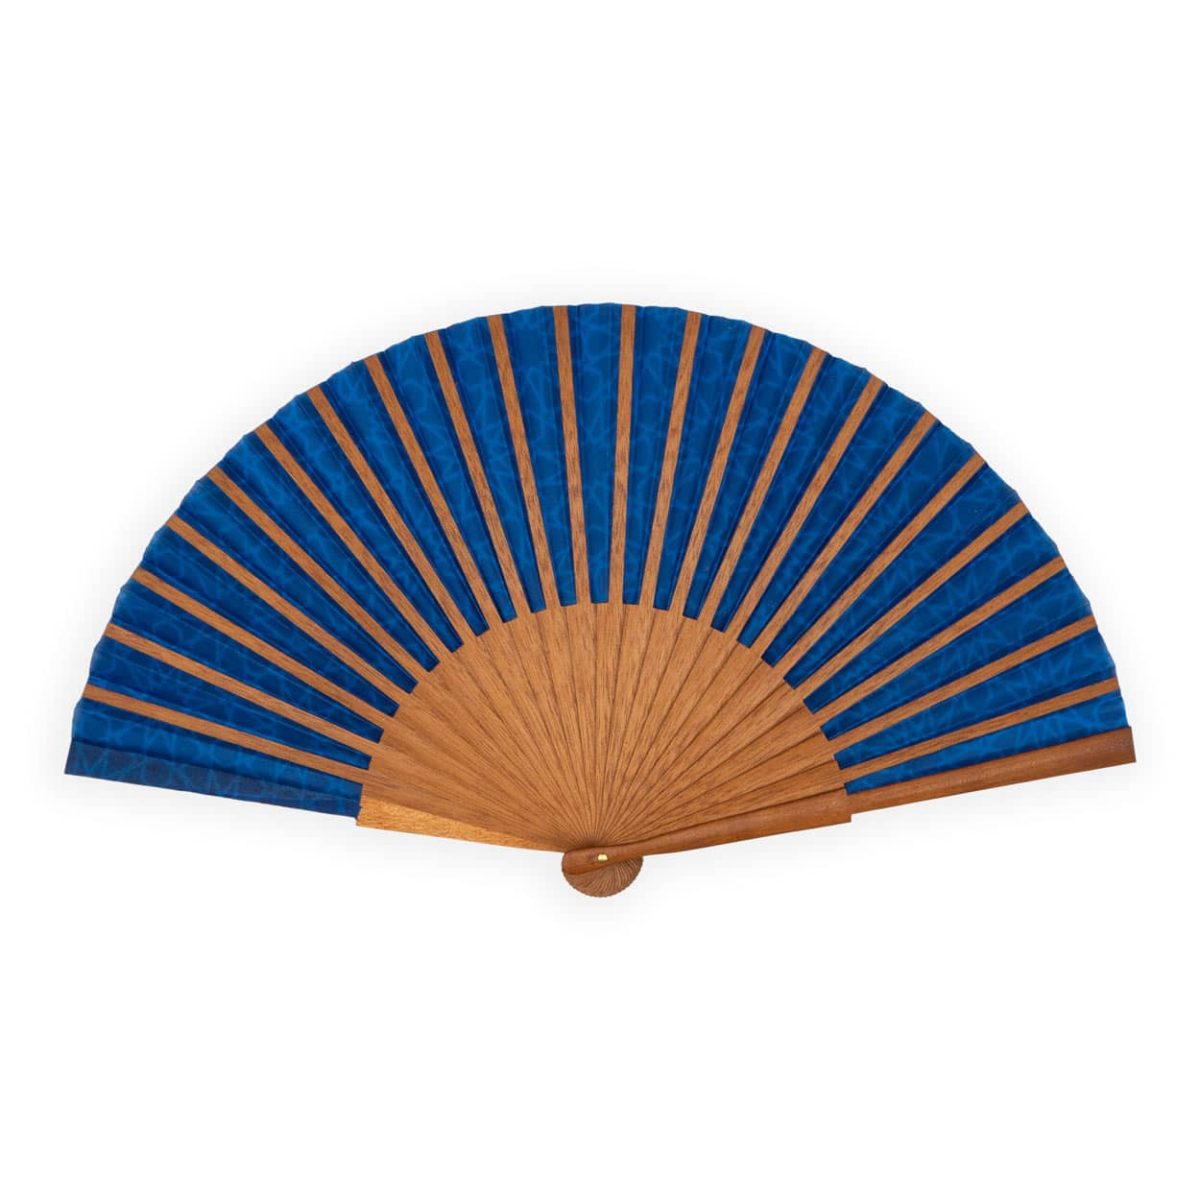 Blue Silk folding fan inspired by Islamic Art patterns